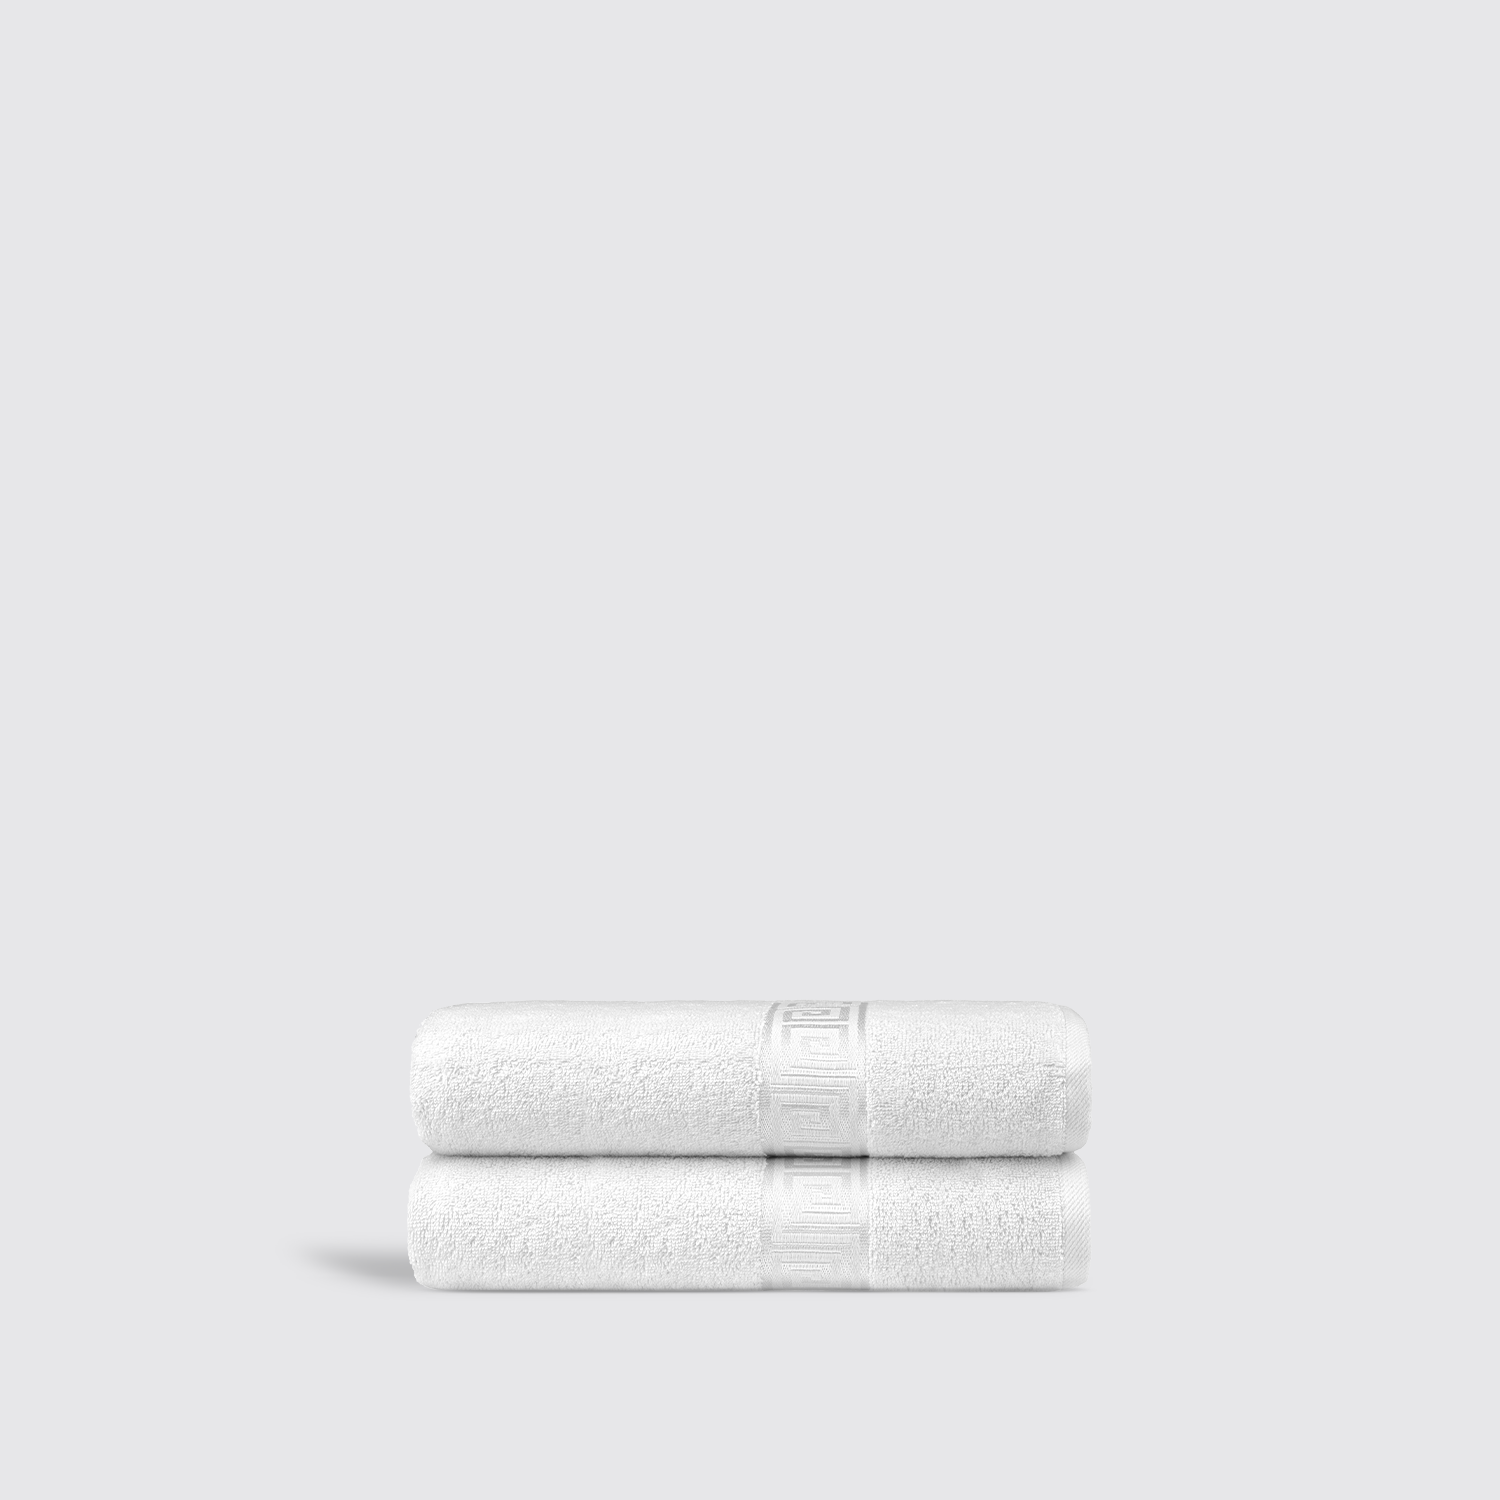 Luxury Hotel Bath Towels